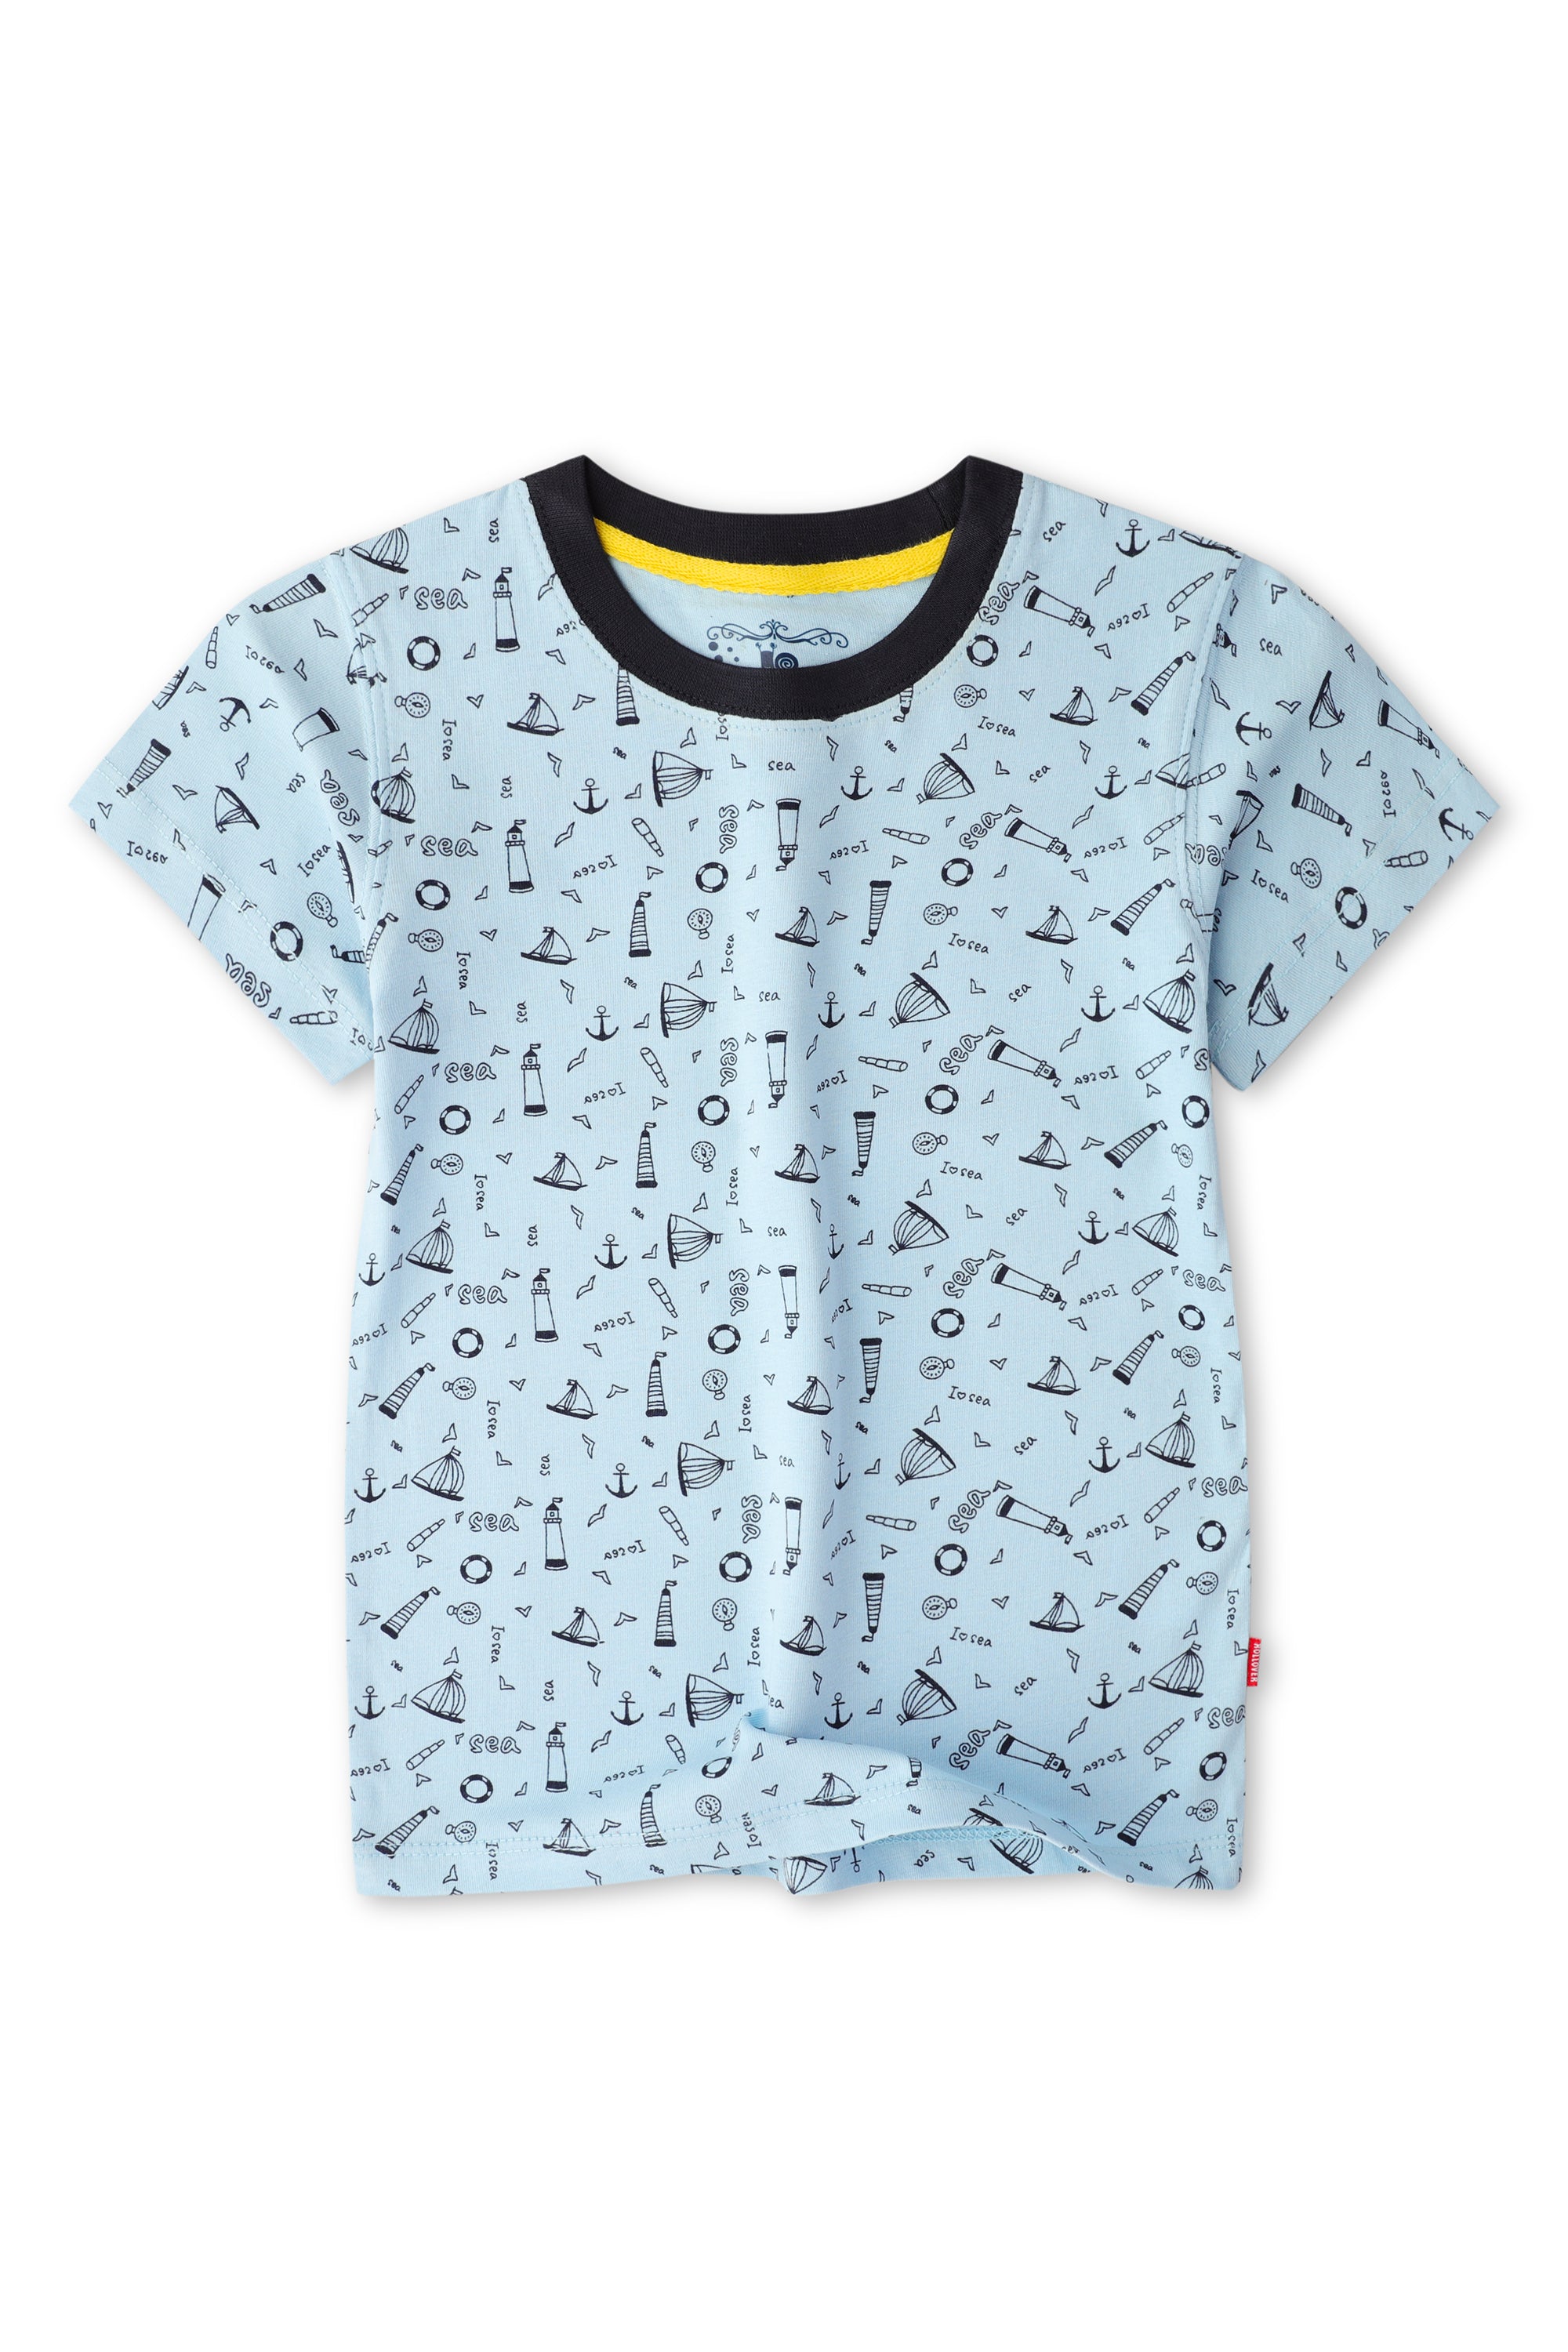 Boys SkyBlue 'Sea' T-shirt